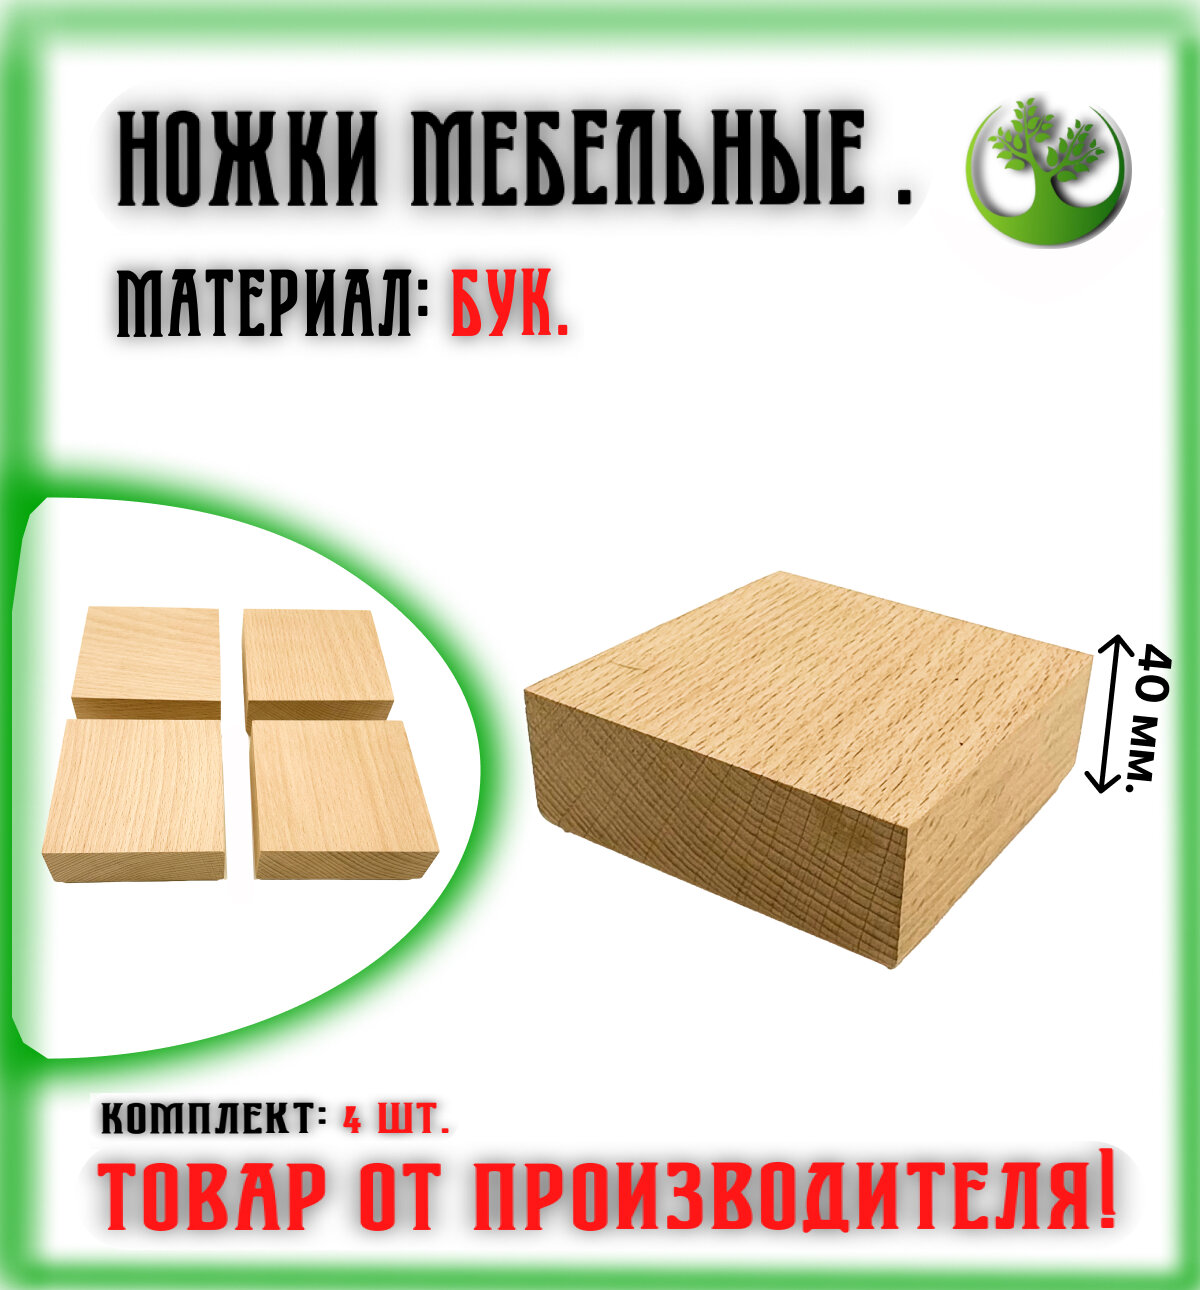 Ножки для мебели деревянные 40 мм. (4 шт.) / Опоры мебельные бук 40 мм. (4 шт.)